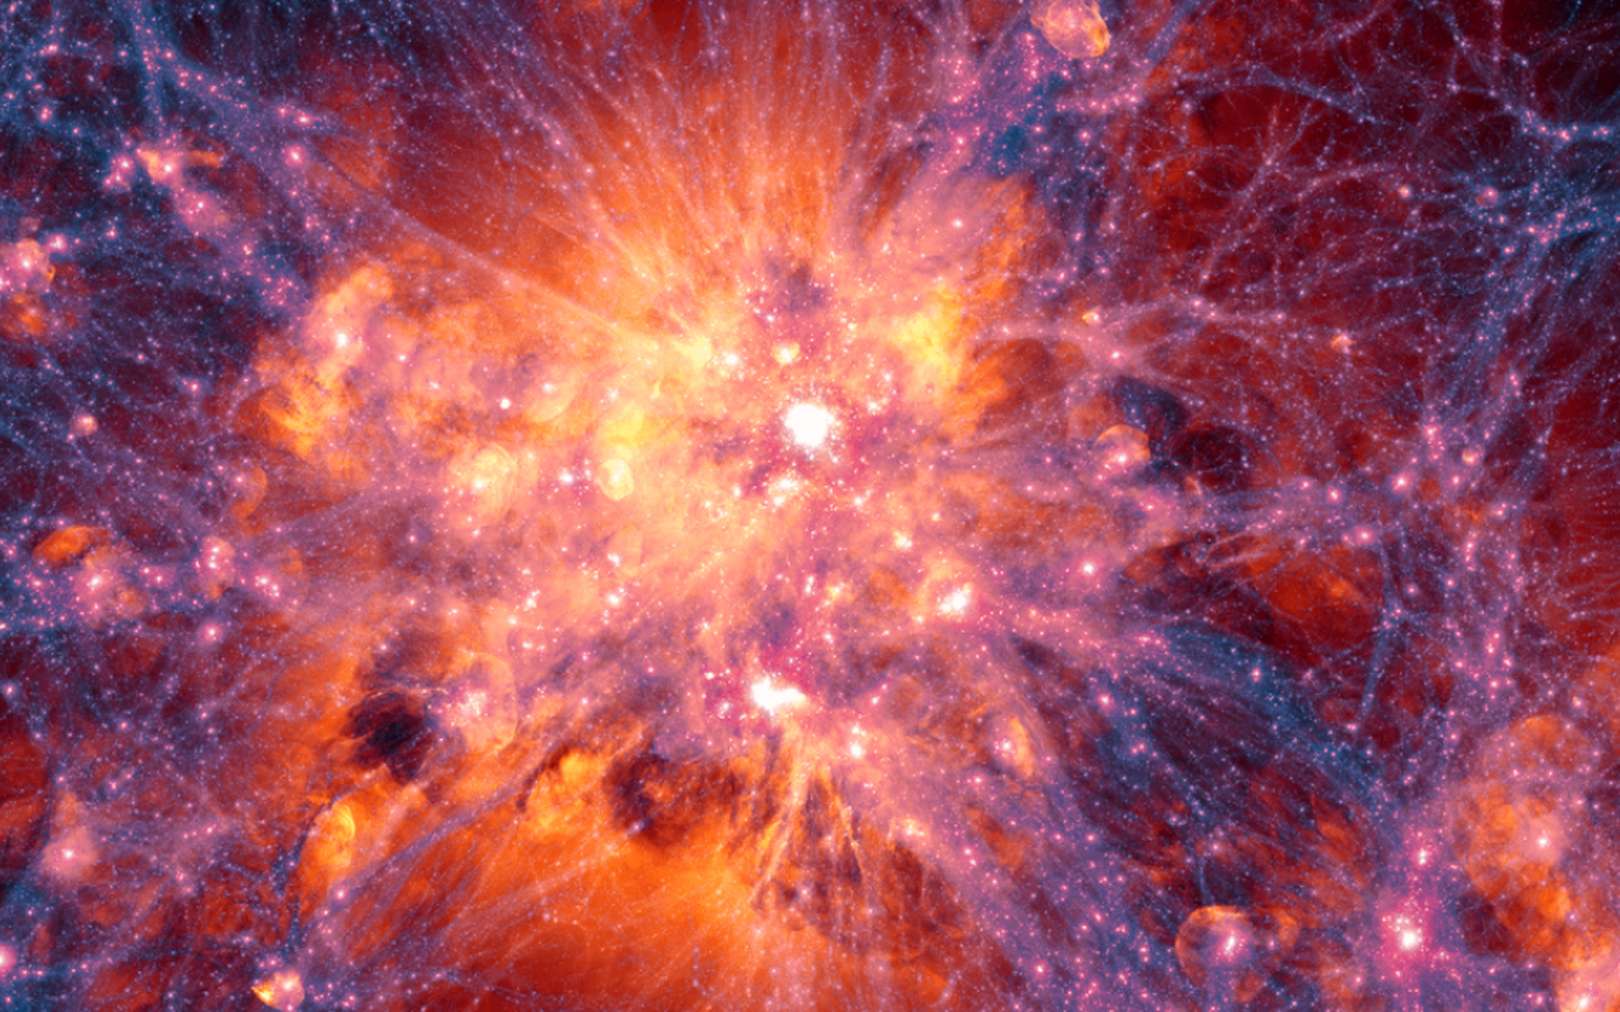 Les protons perdus du Big Bang ont-ils enfin été retrouvés ? Ici, projection à grande échelle centrée sur l’amas de galaxies le plus massif dans la simulation Illustris. Elle montre la distribution de la matière noire en filaments (bleu, violet et pourpre), laquelle interagit gravitationnellement avec la matière ordinaire et favorise la formation des amas de galaxies. Les enveloppes de gaz teintées de rouge, rose ou orange sont principalement créées par l’explosion de supernovae ou les jets des trous noirs supermassifs. © Illustris Collaboration